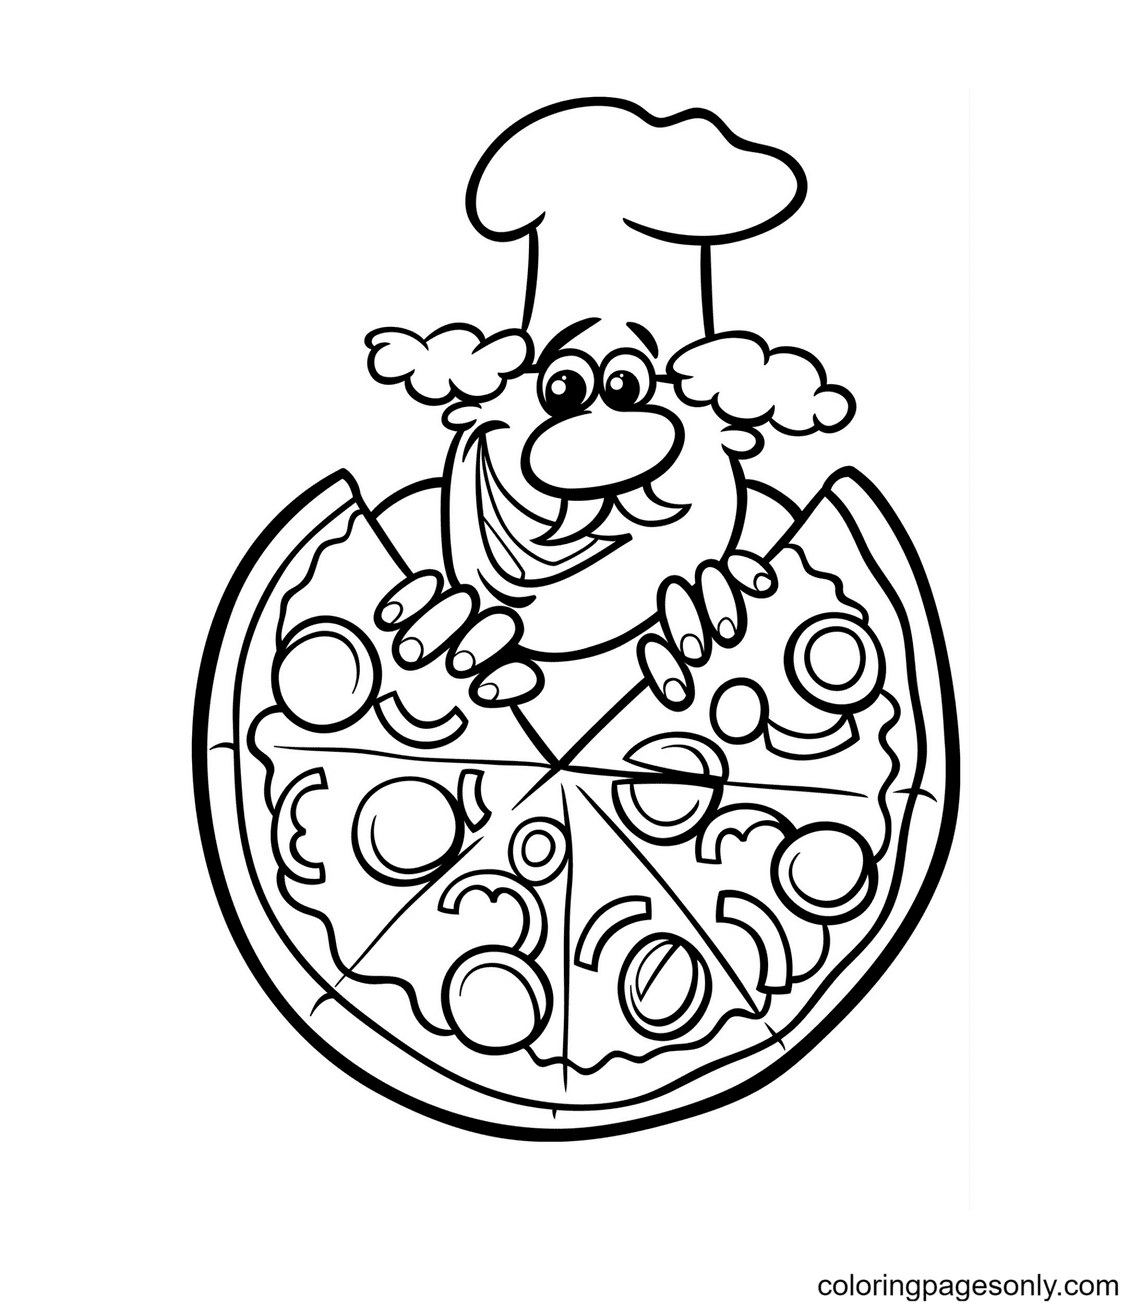 Página para colorear de pizza y chef